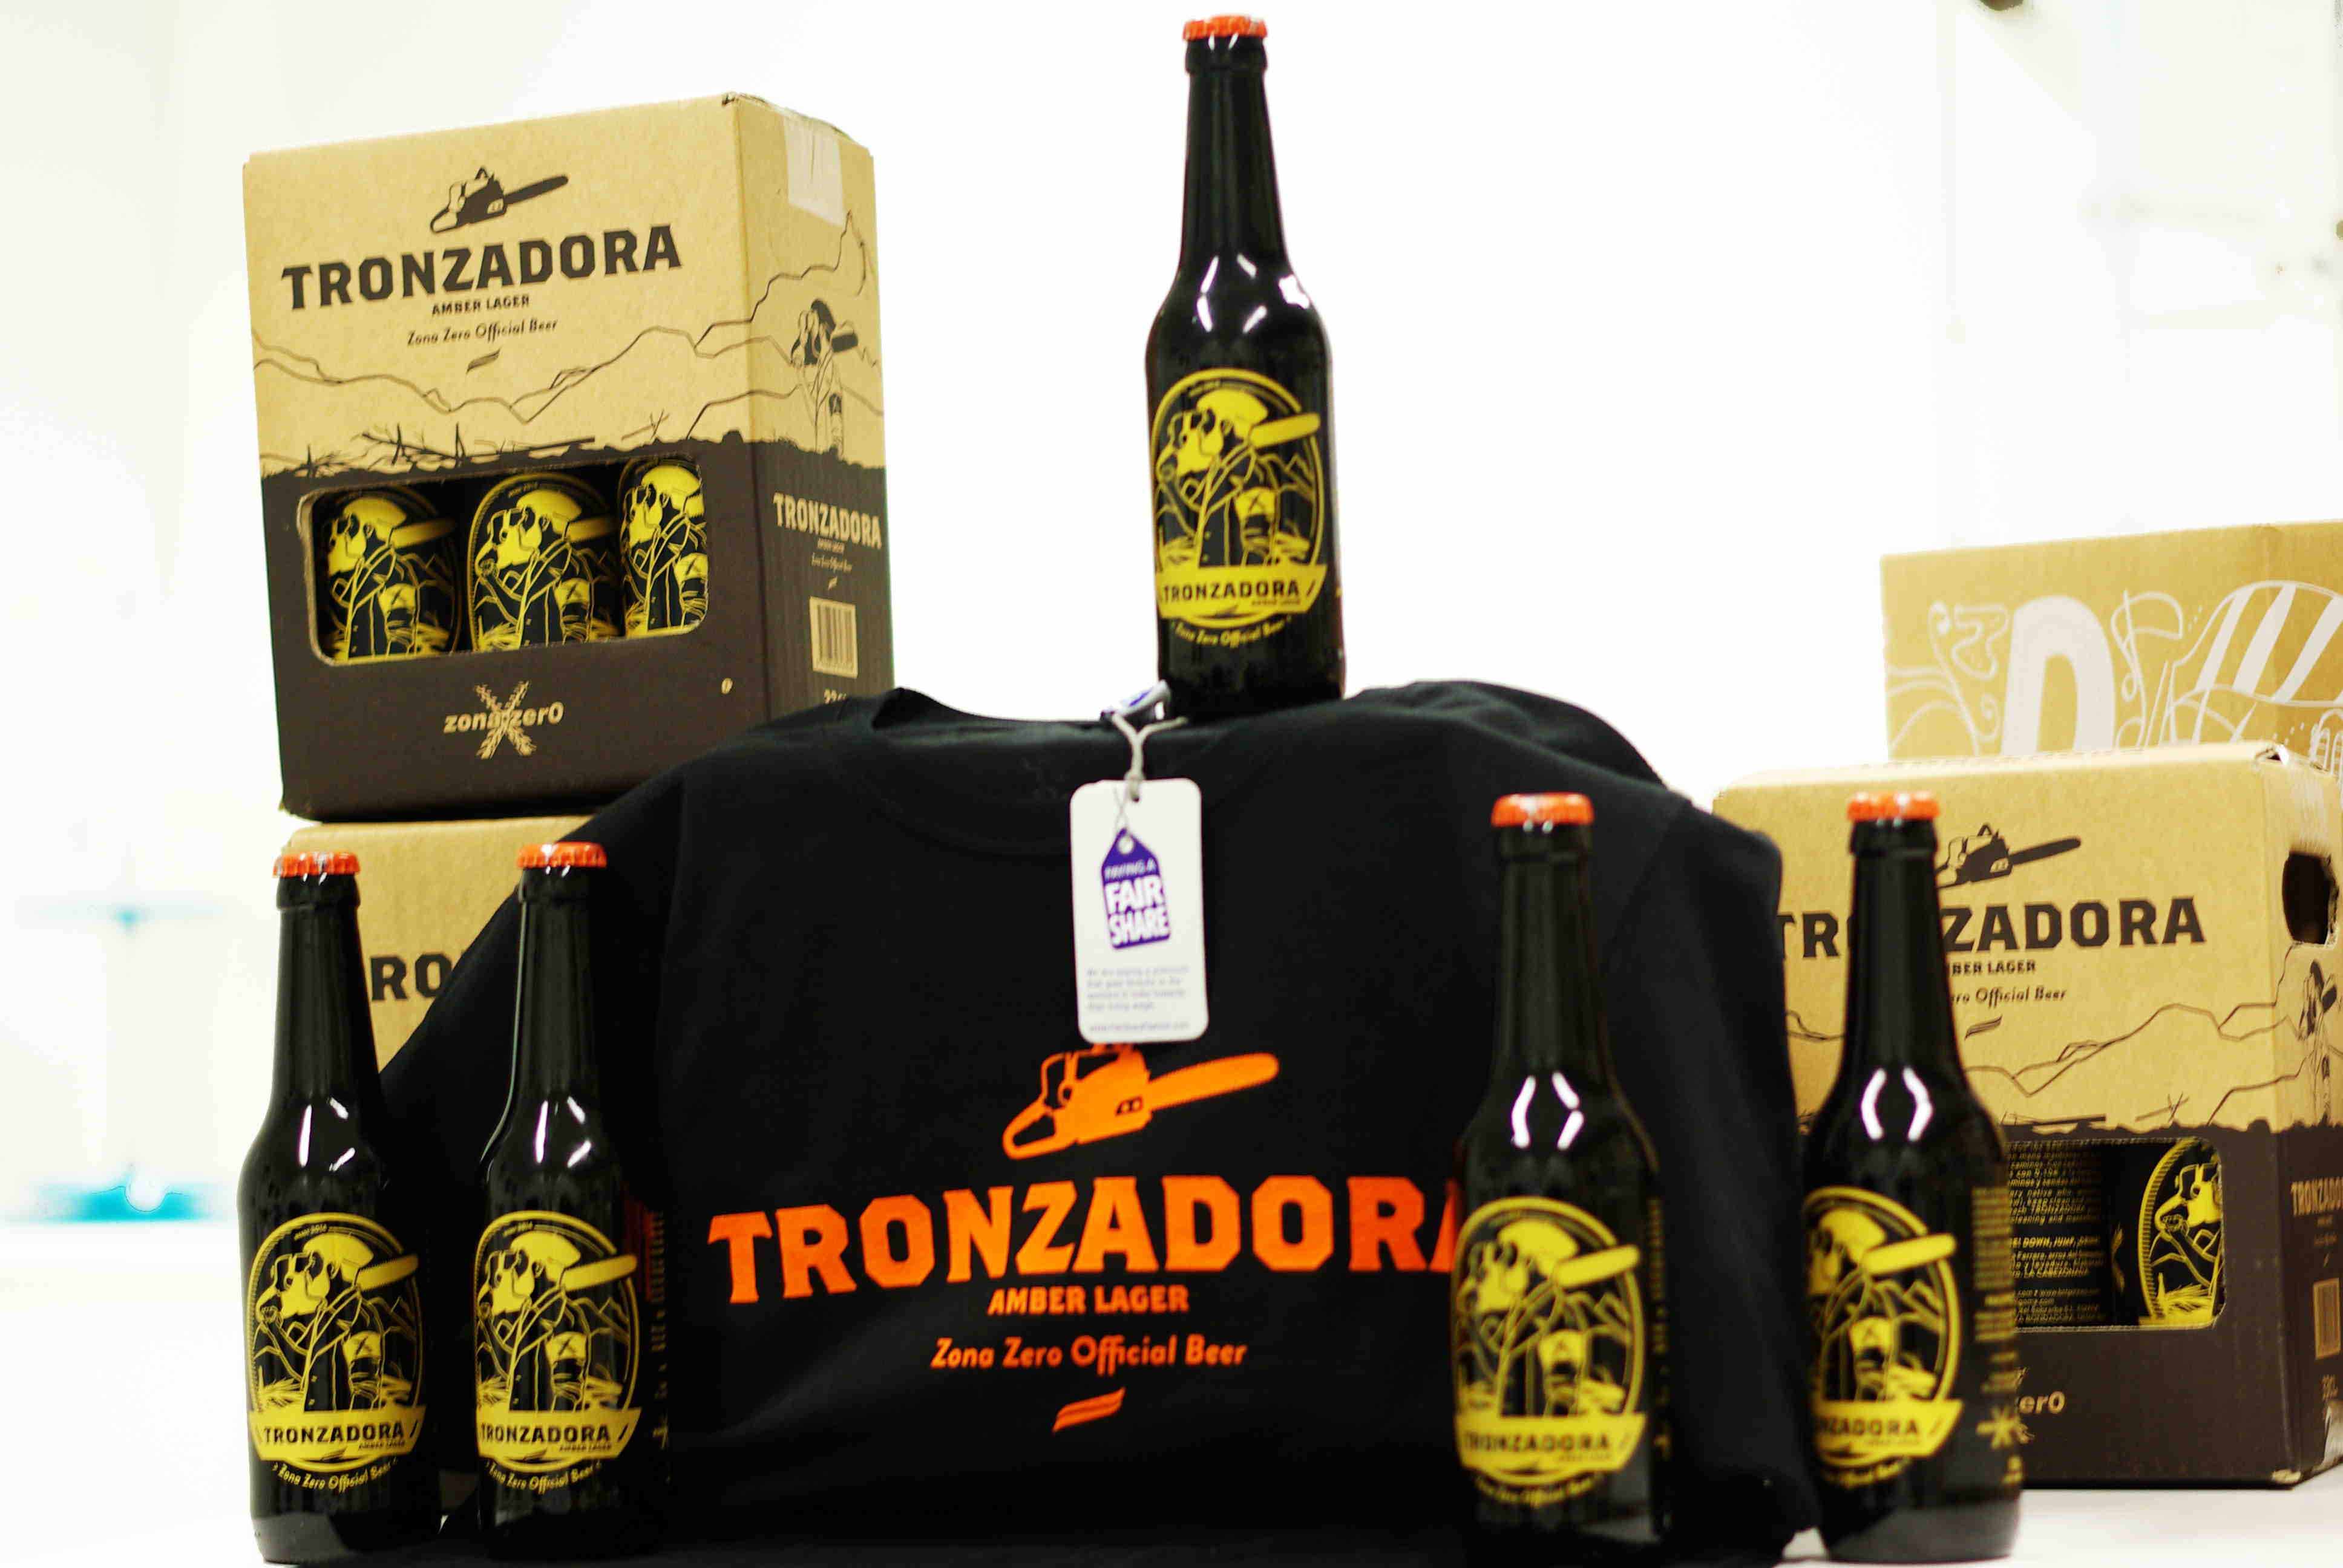 Pack 6 Tronzadora 33cl + camiseta - Cerveza Rondadora - Rondadora